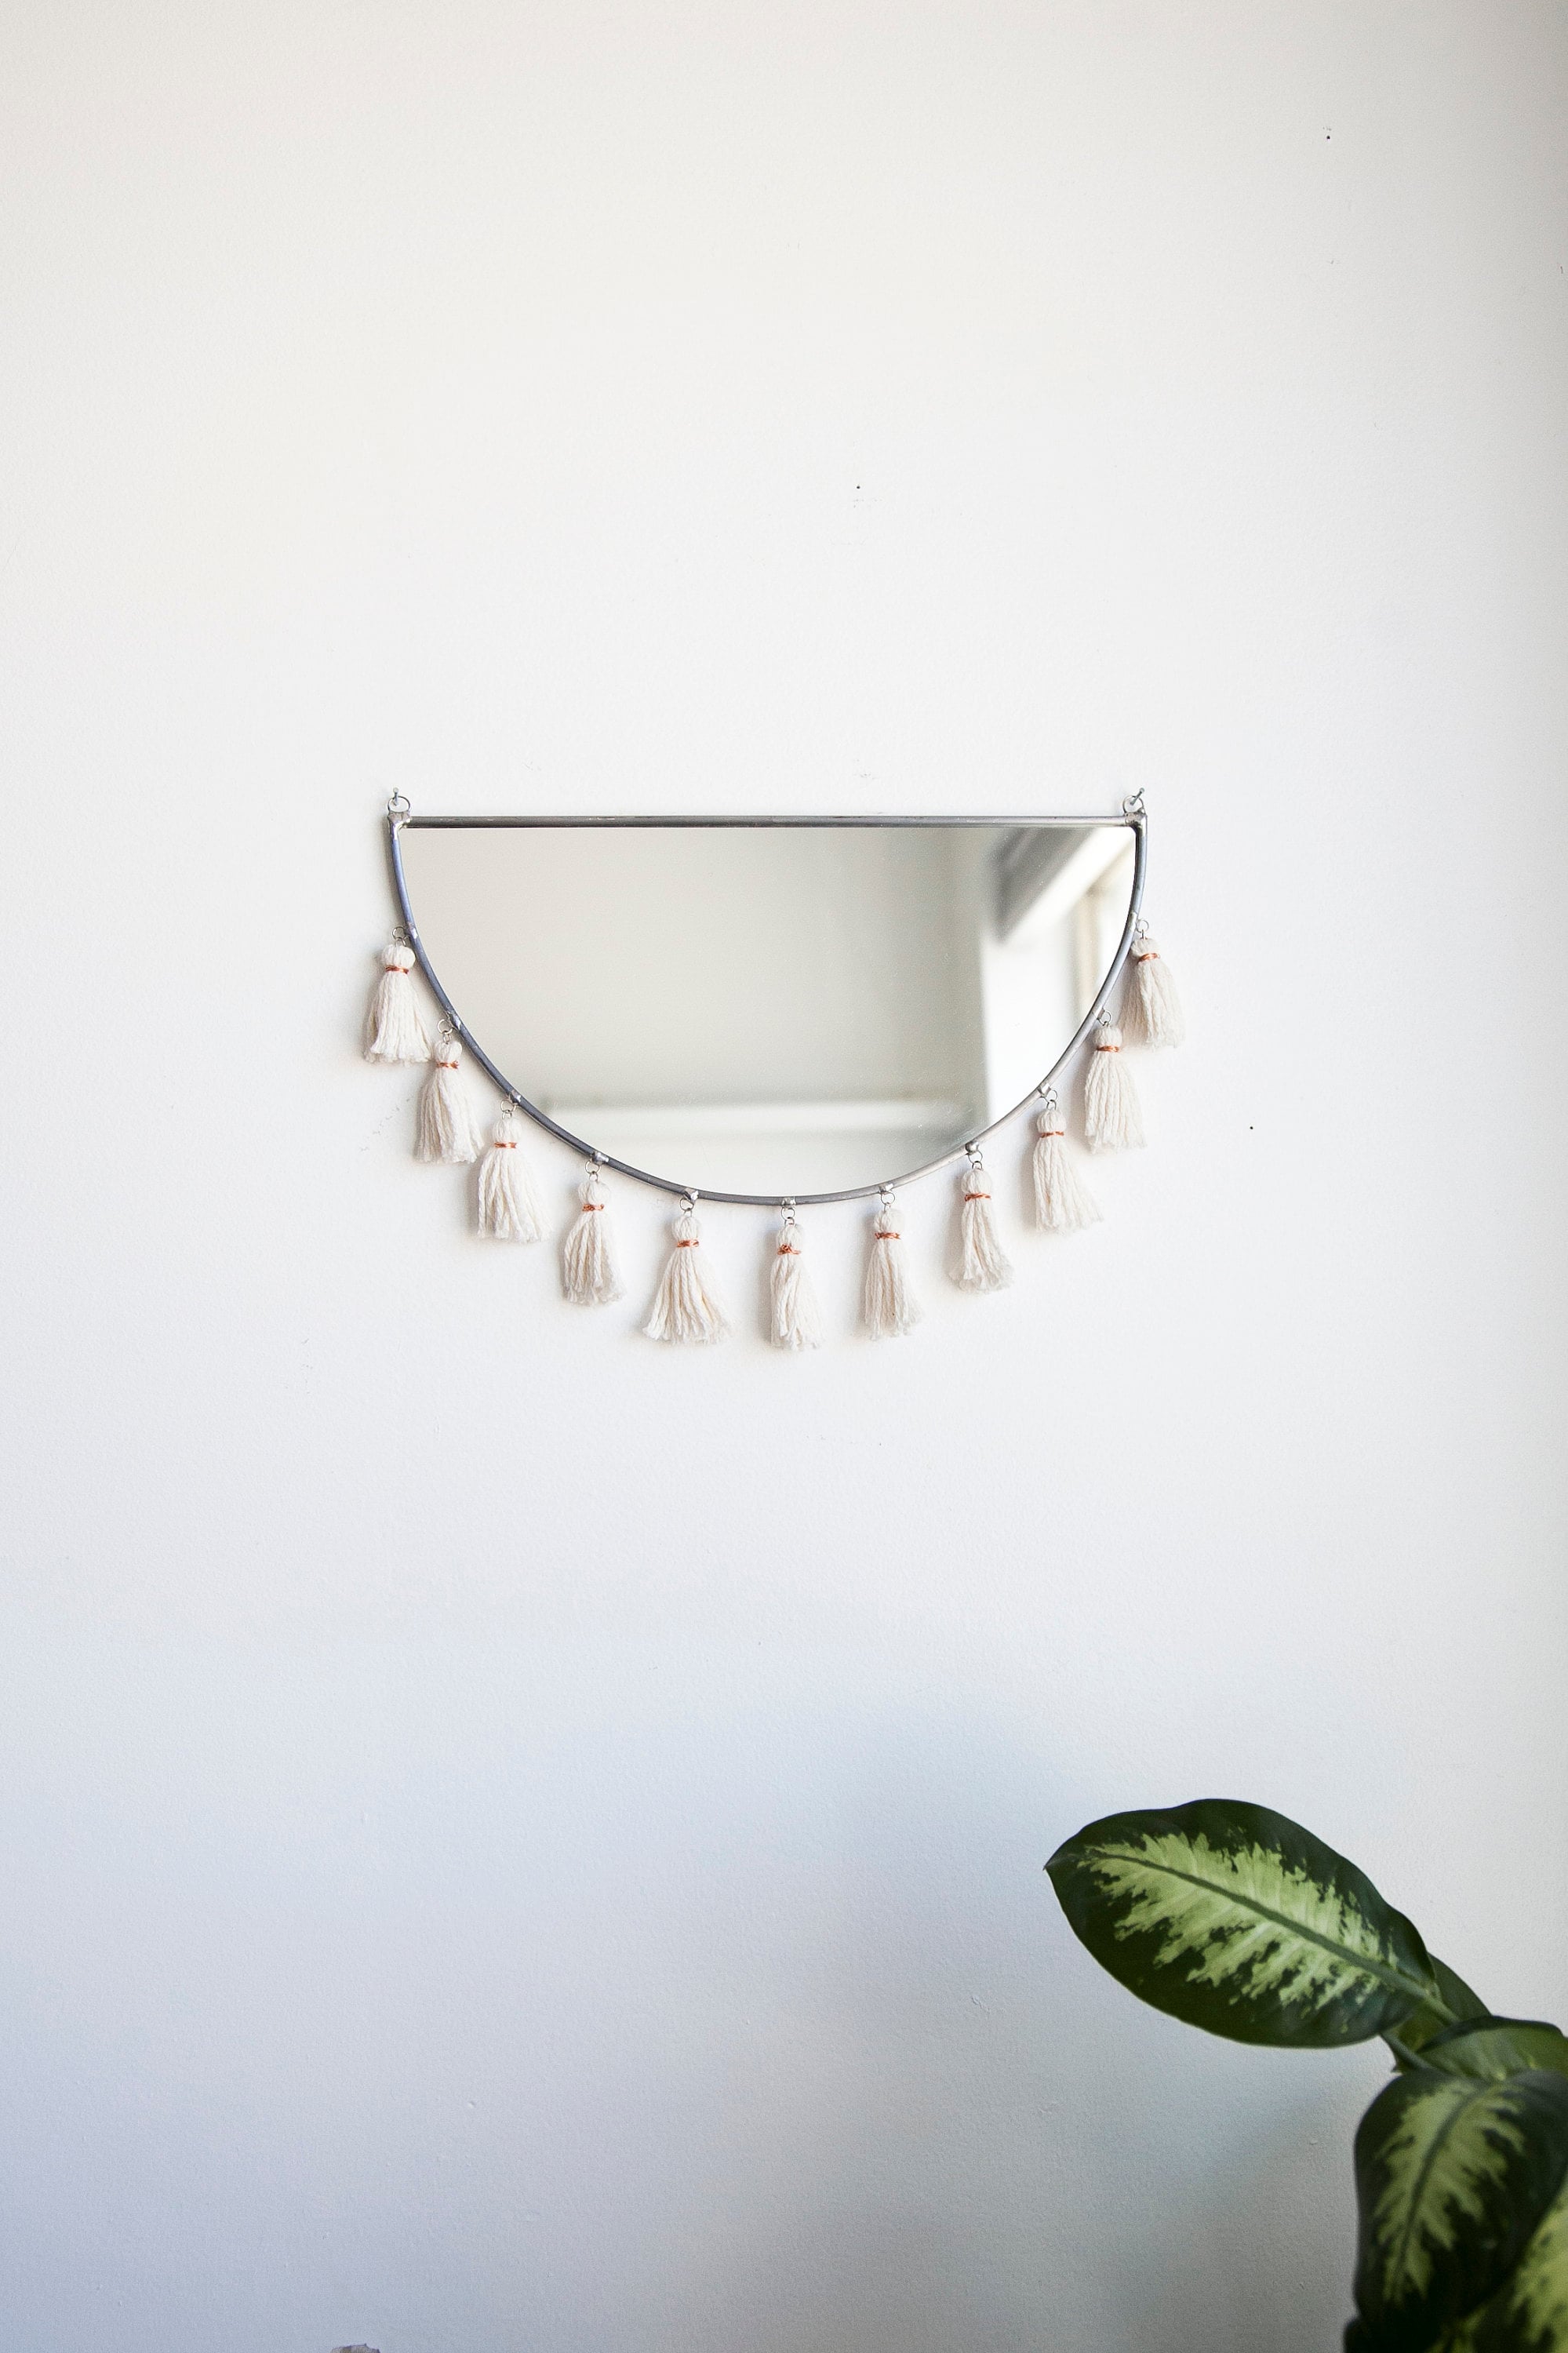 Le Kiesa - Miroir Demi-Cercle avec Glands Vitrail Décor Mural Miroir Minimal